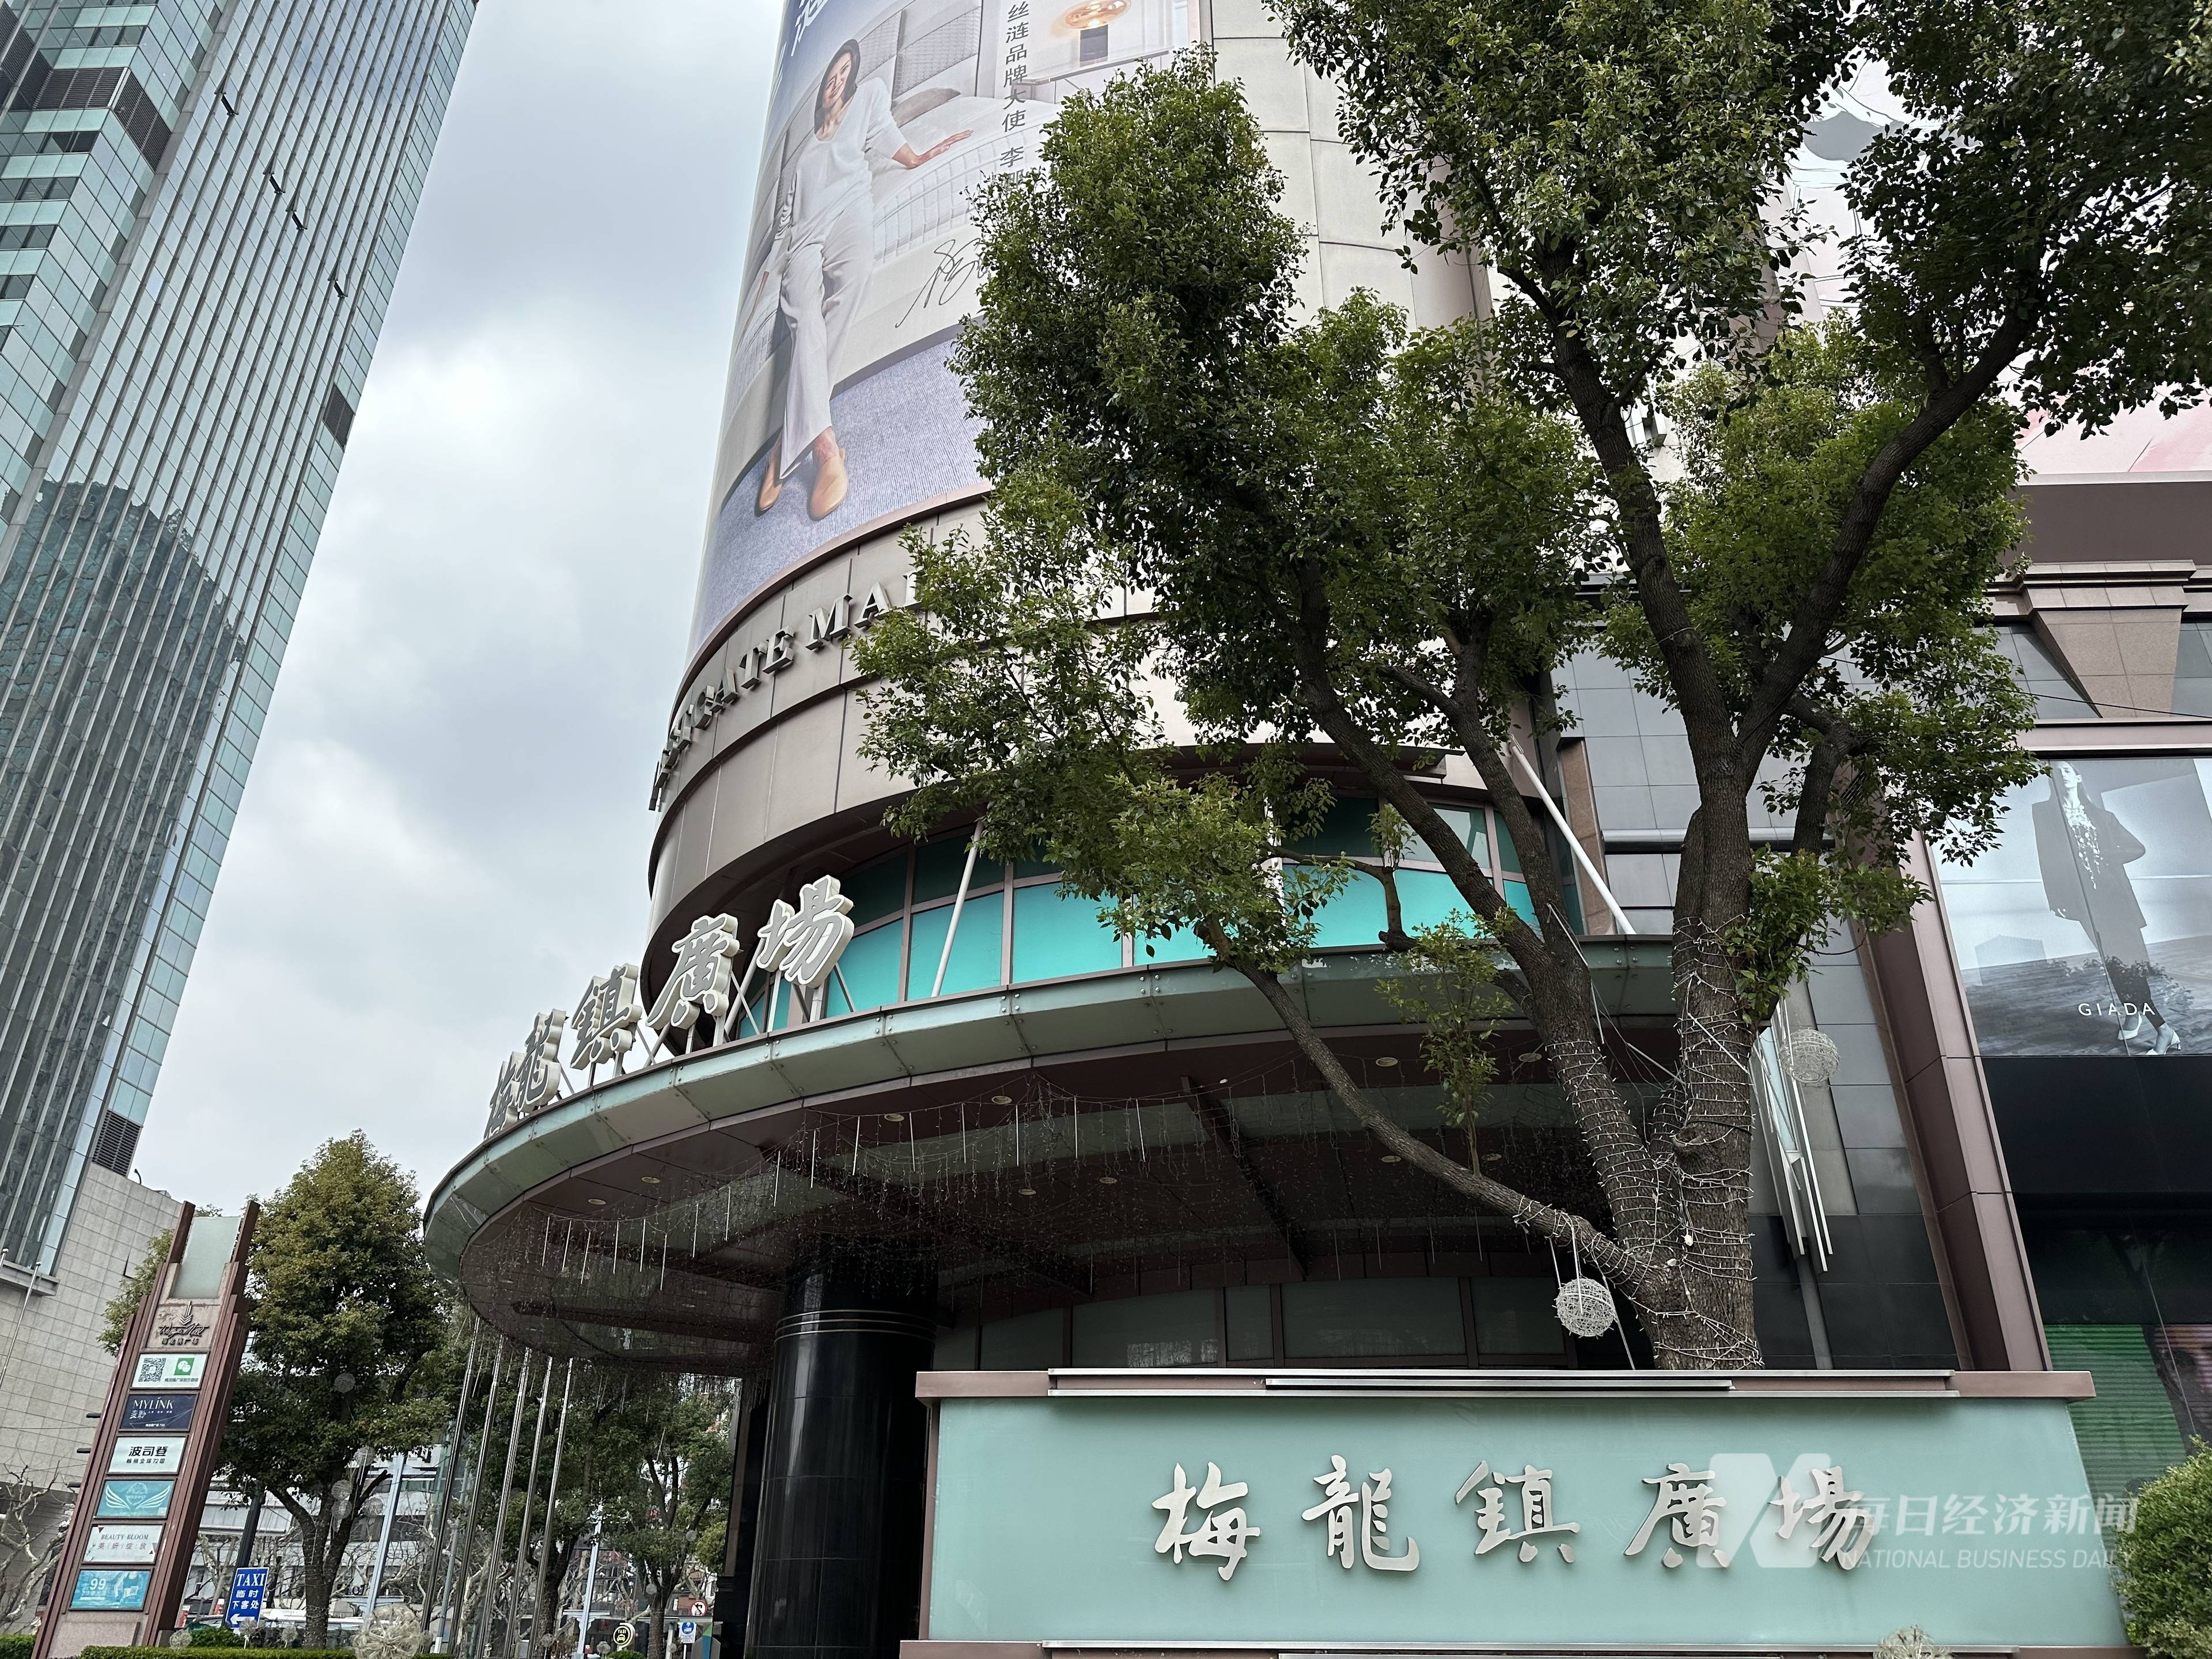 梅龙镇伊势丹官宣6月底终止营业陪伴上海人二十多年的商场谢幕